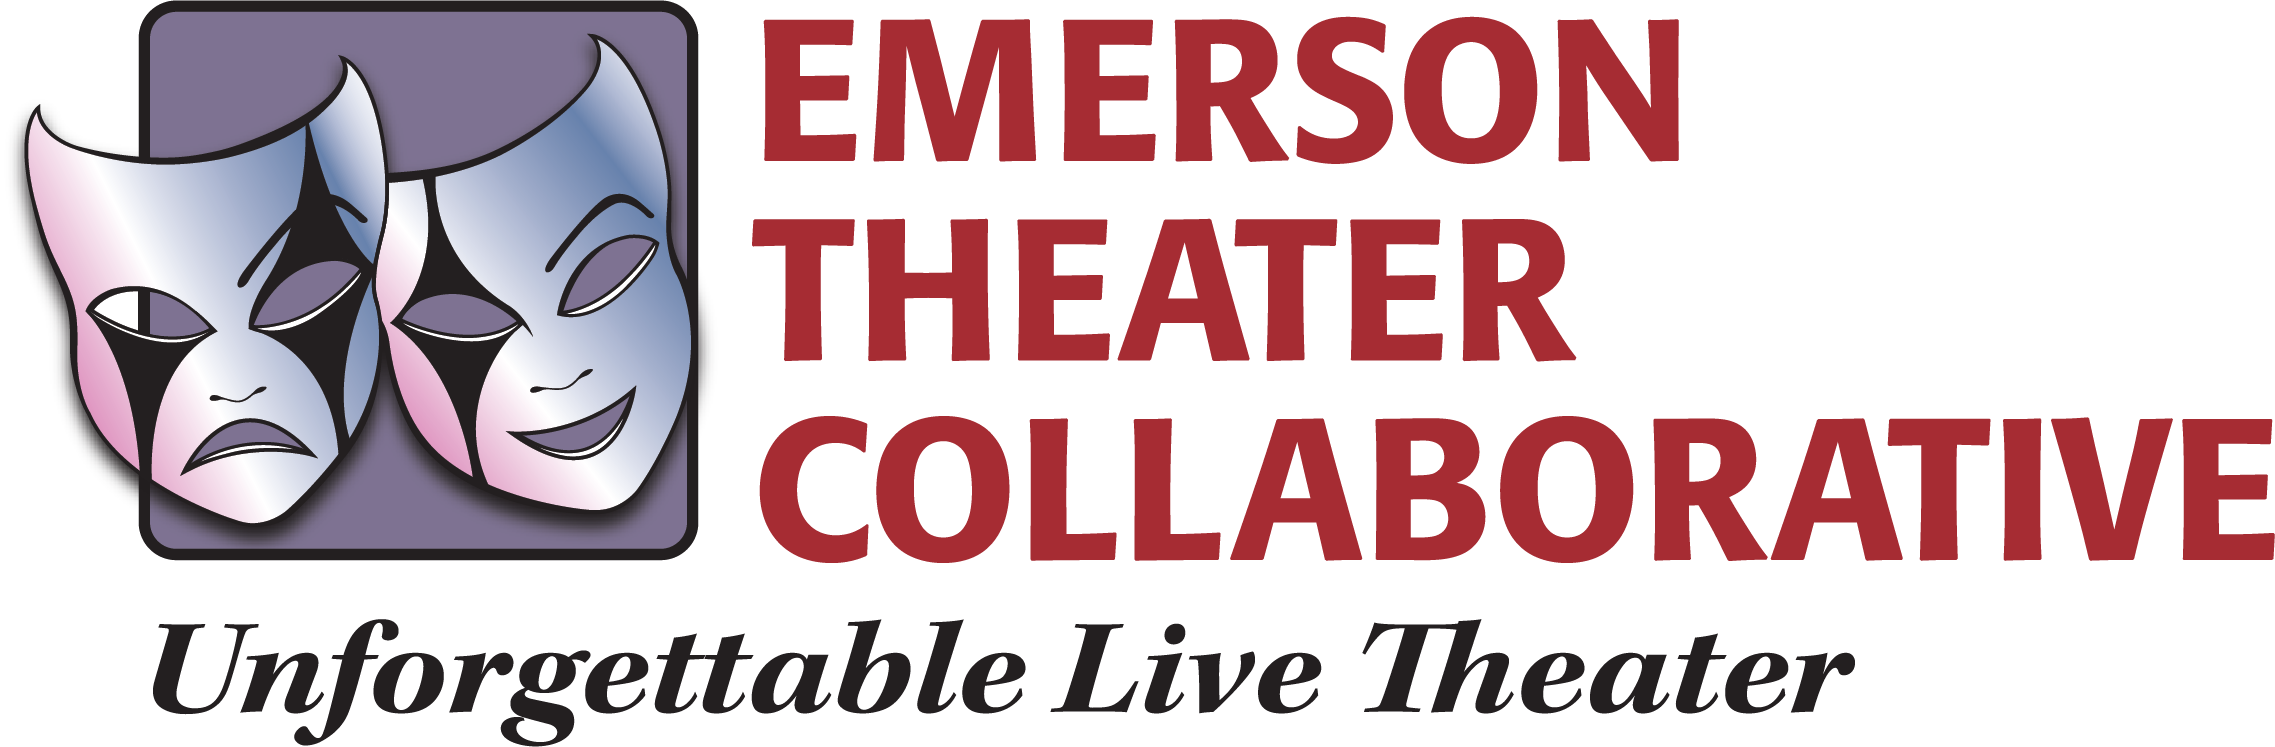 Emerson Theater Collaborative Logo